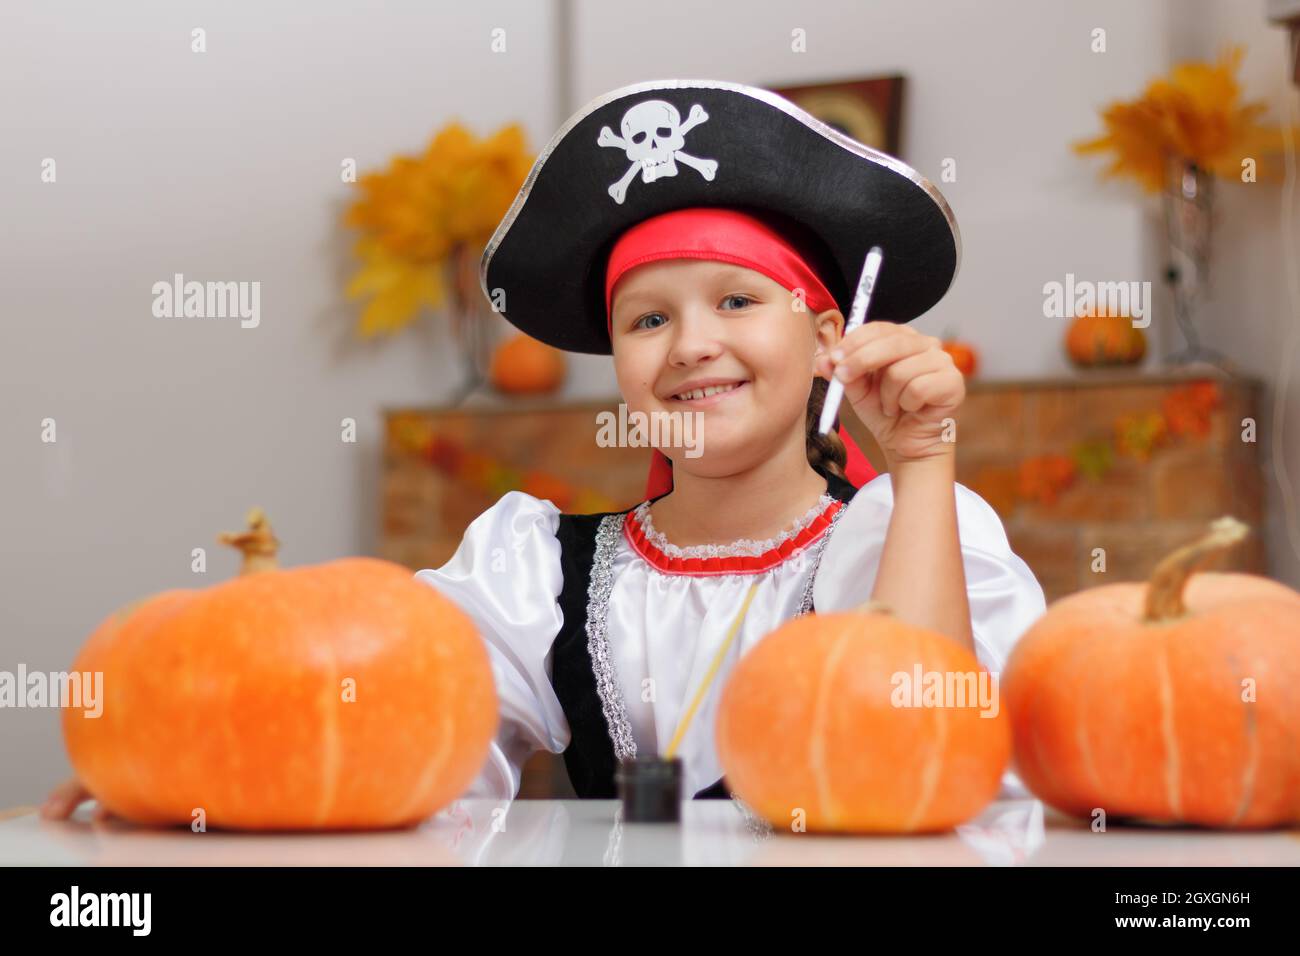 Halloween zu Hause feiern. Ein kleines Mädchen, das als Pirat gekleidet ist, sitzt am Tisch und zieht einen Kürbis an. Das Kind schaut in die Kamera. Stockfoto